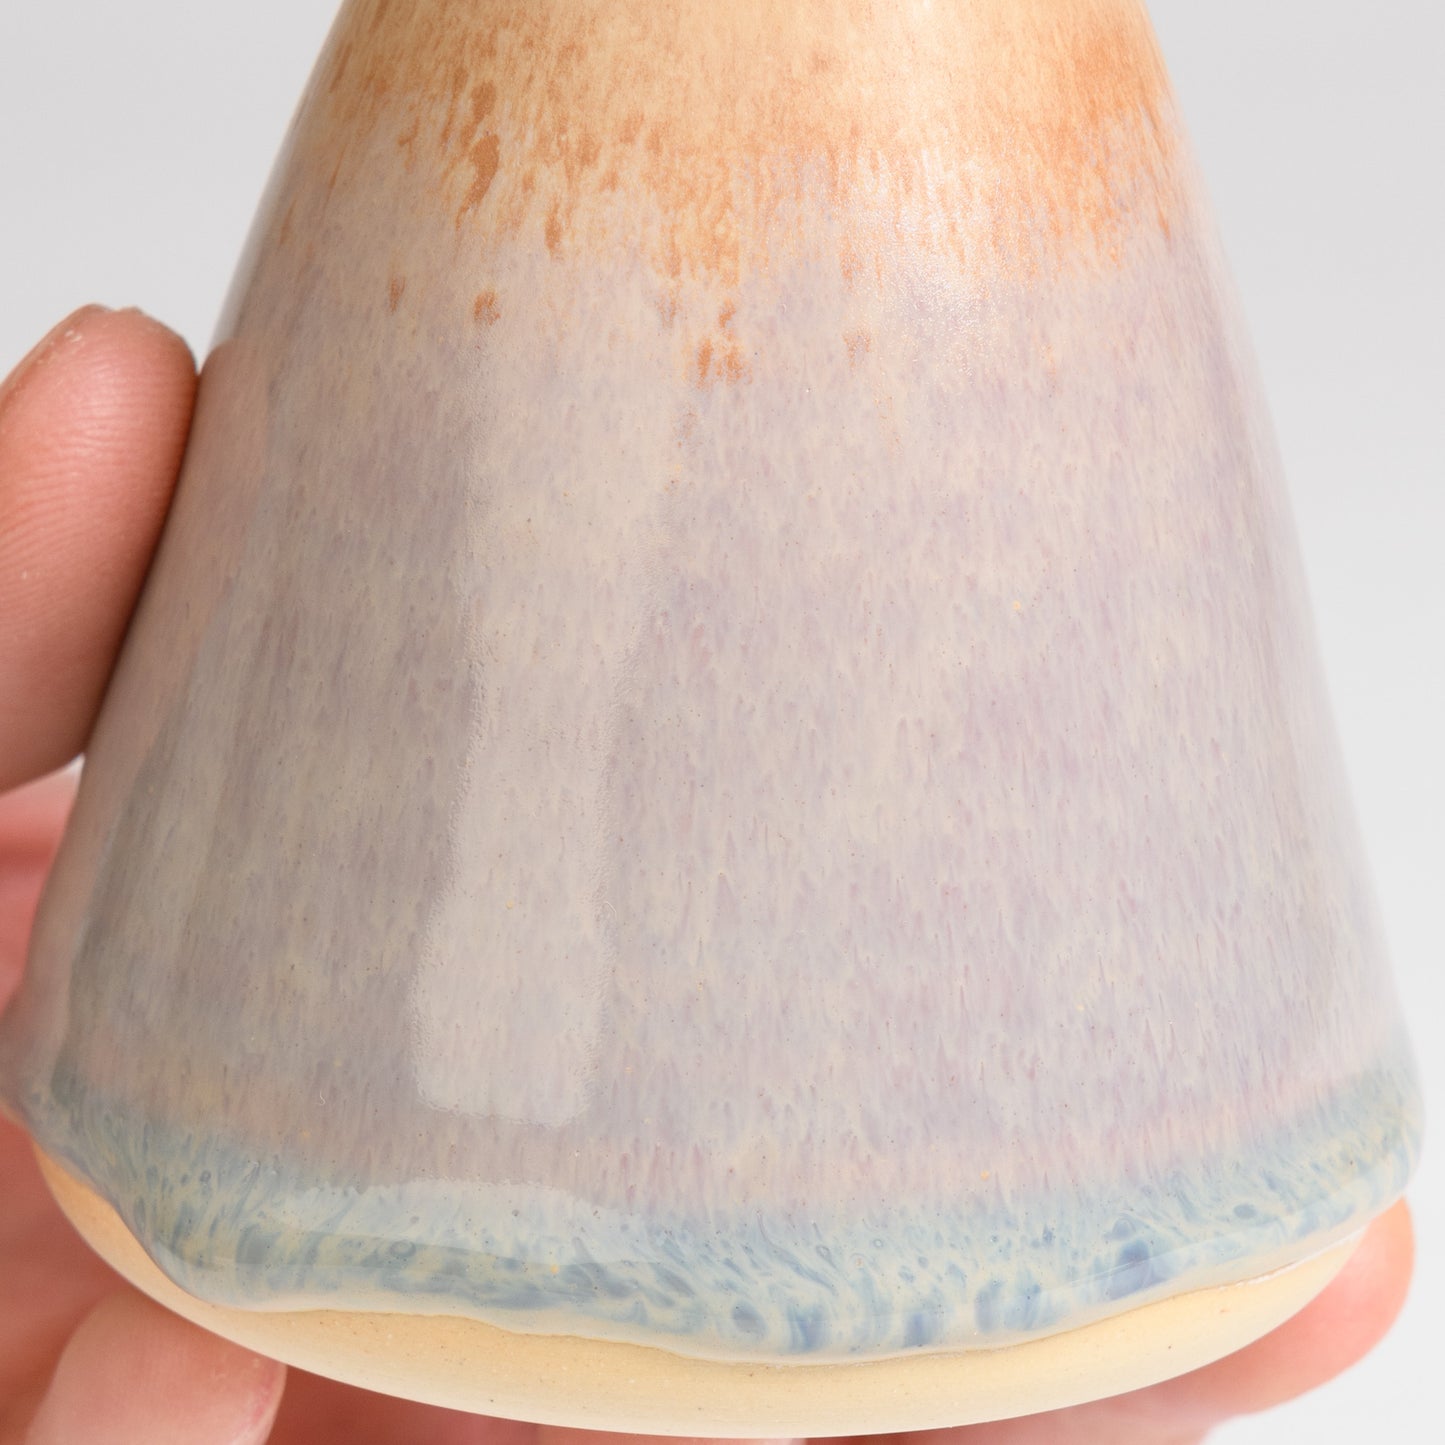 Mini Vase - Sunset Cone